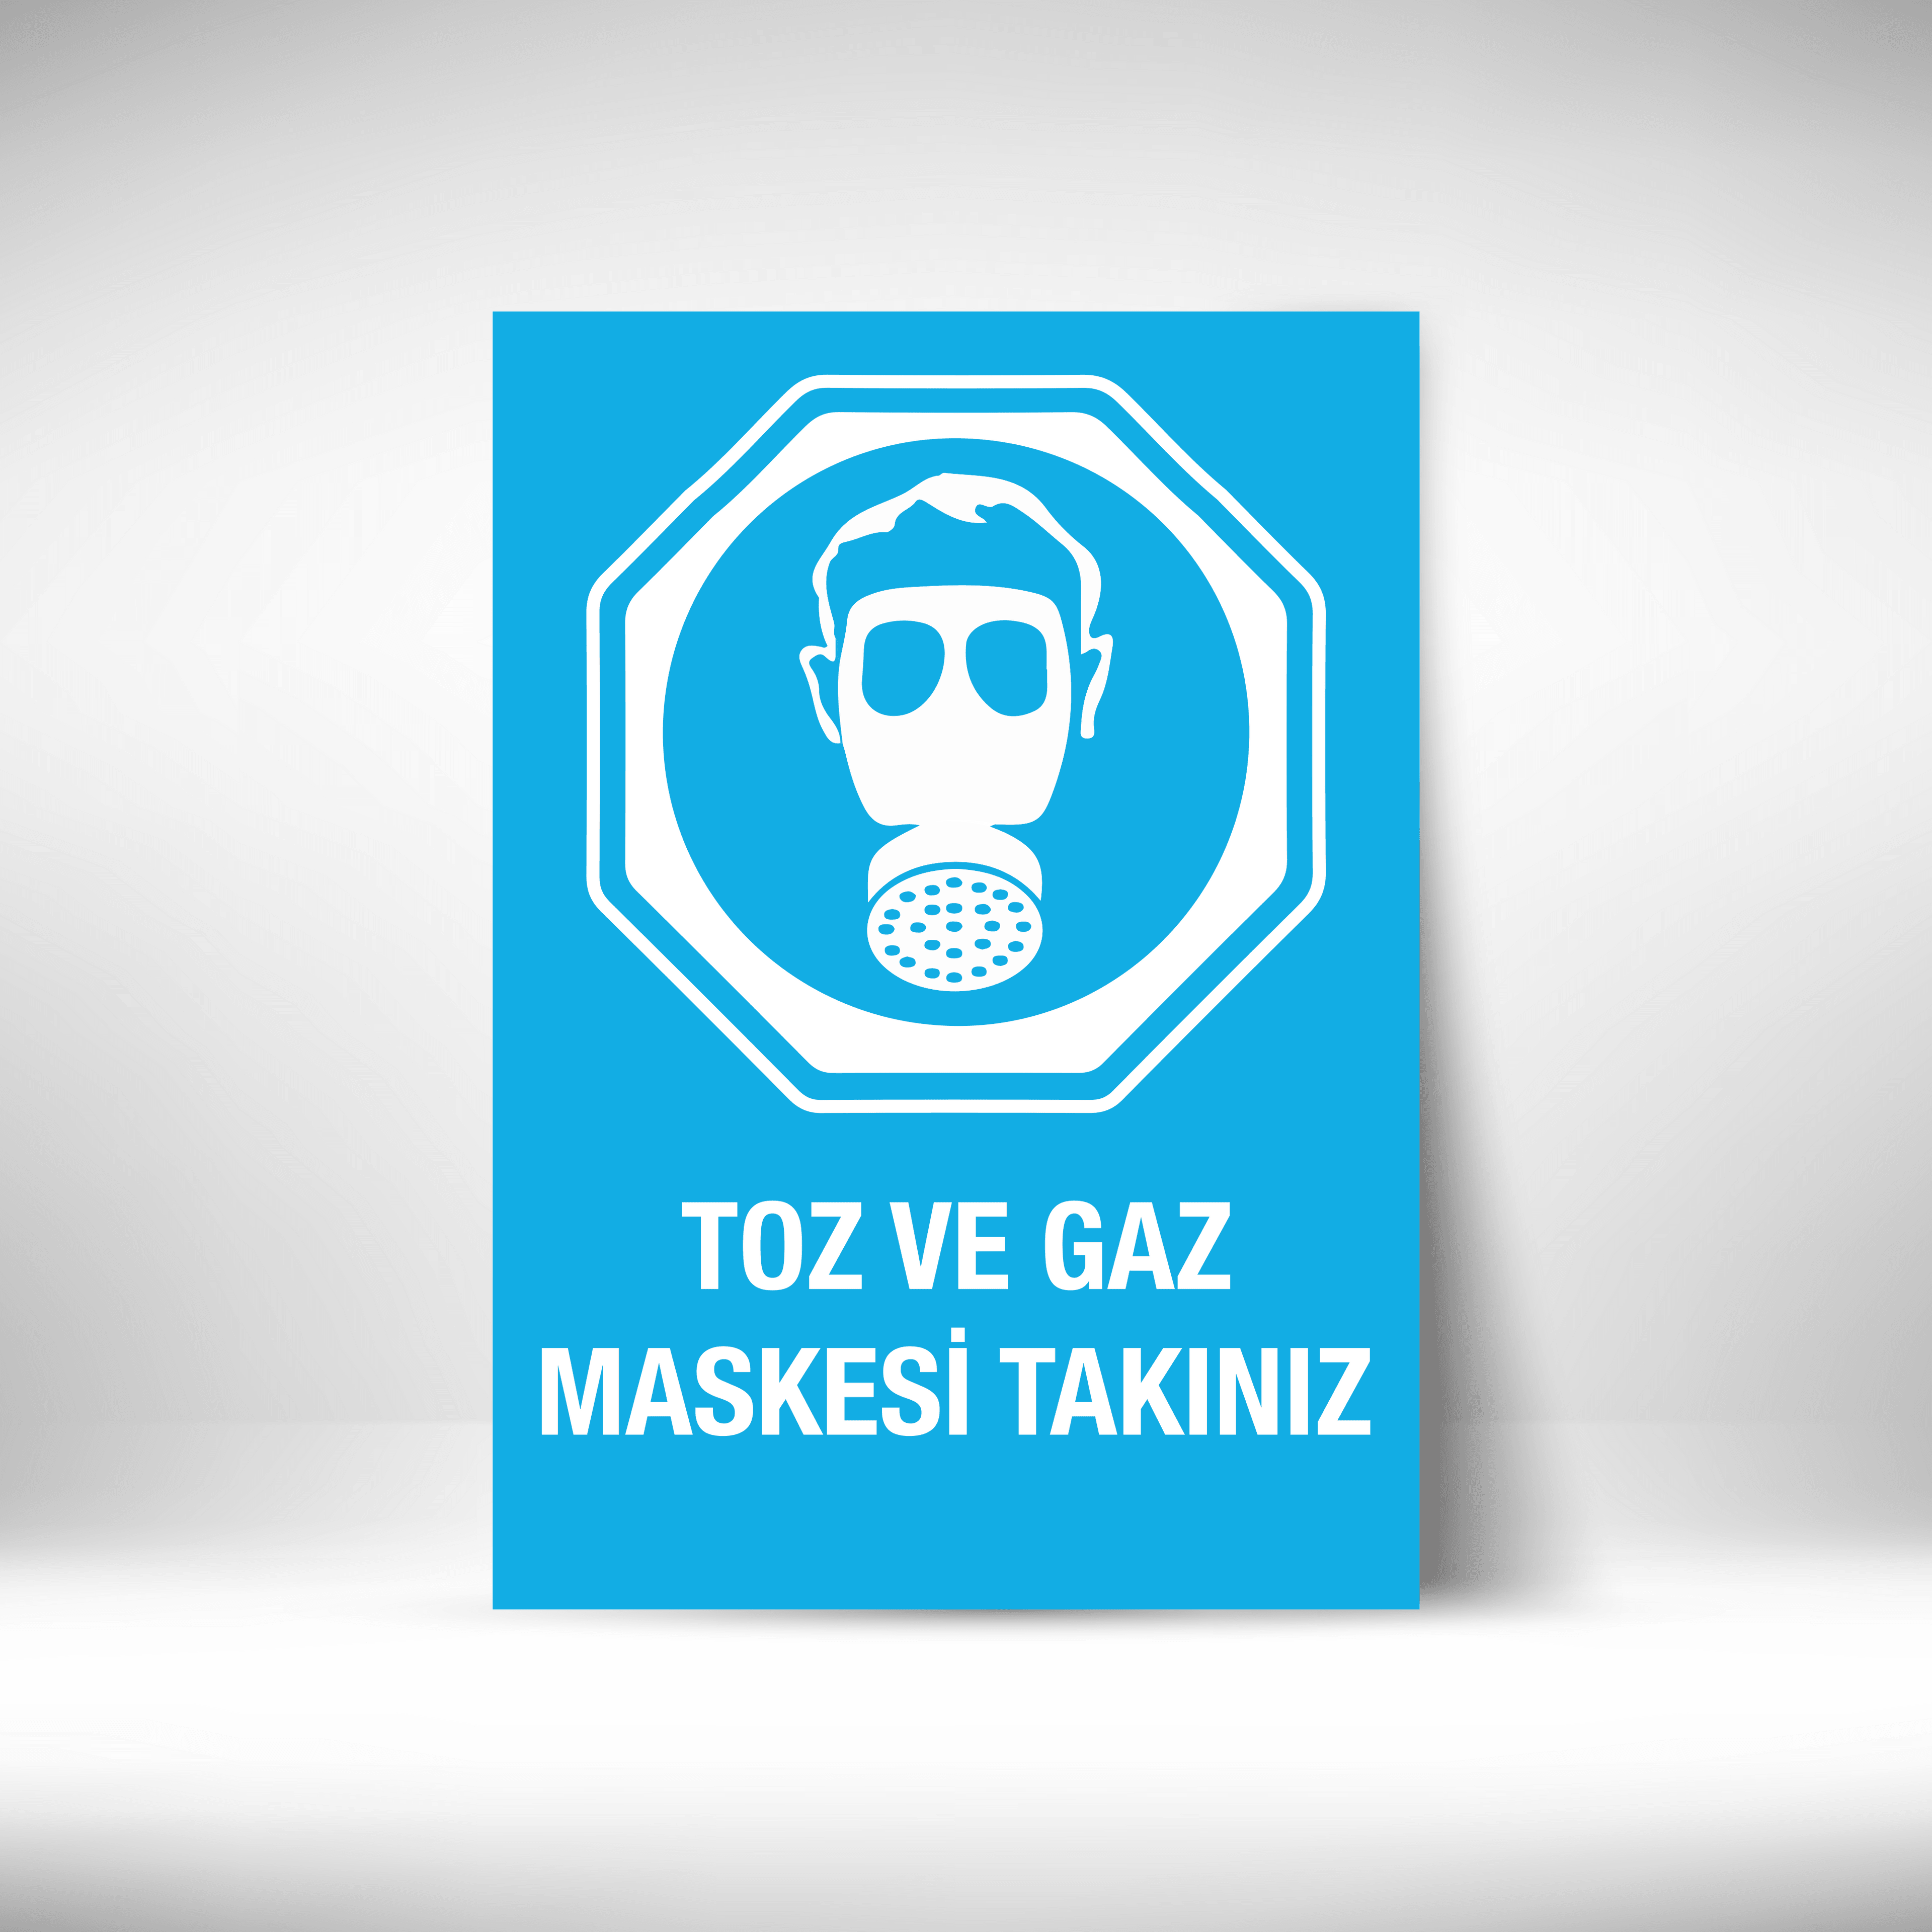 Toz Ve Gaz Maskesi Takınız main variant image